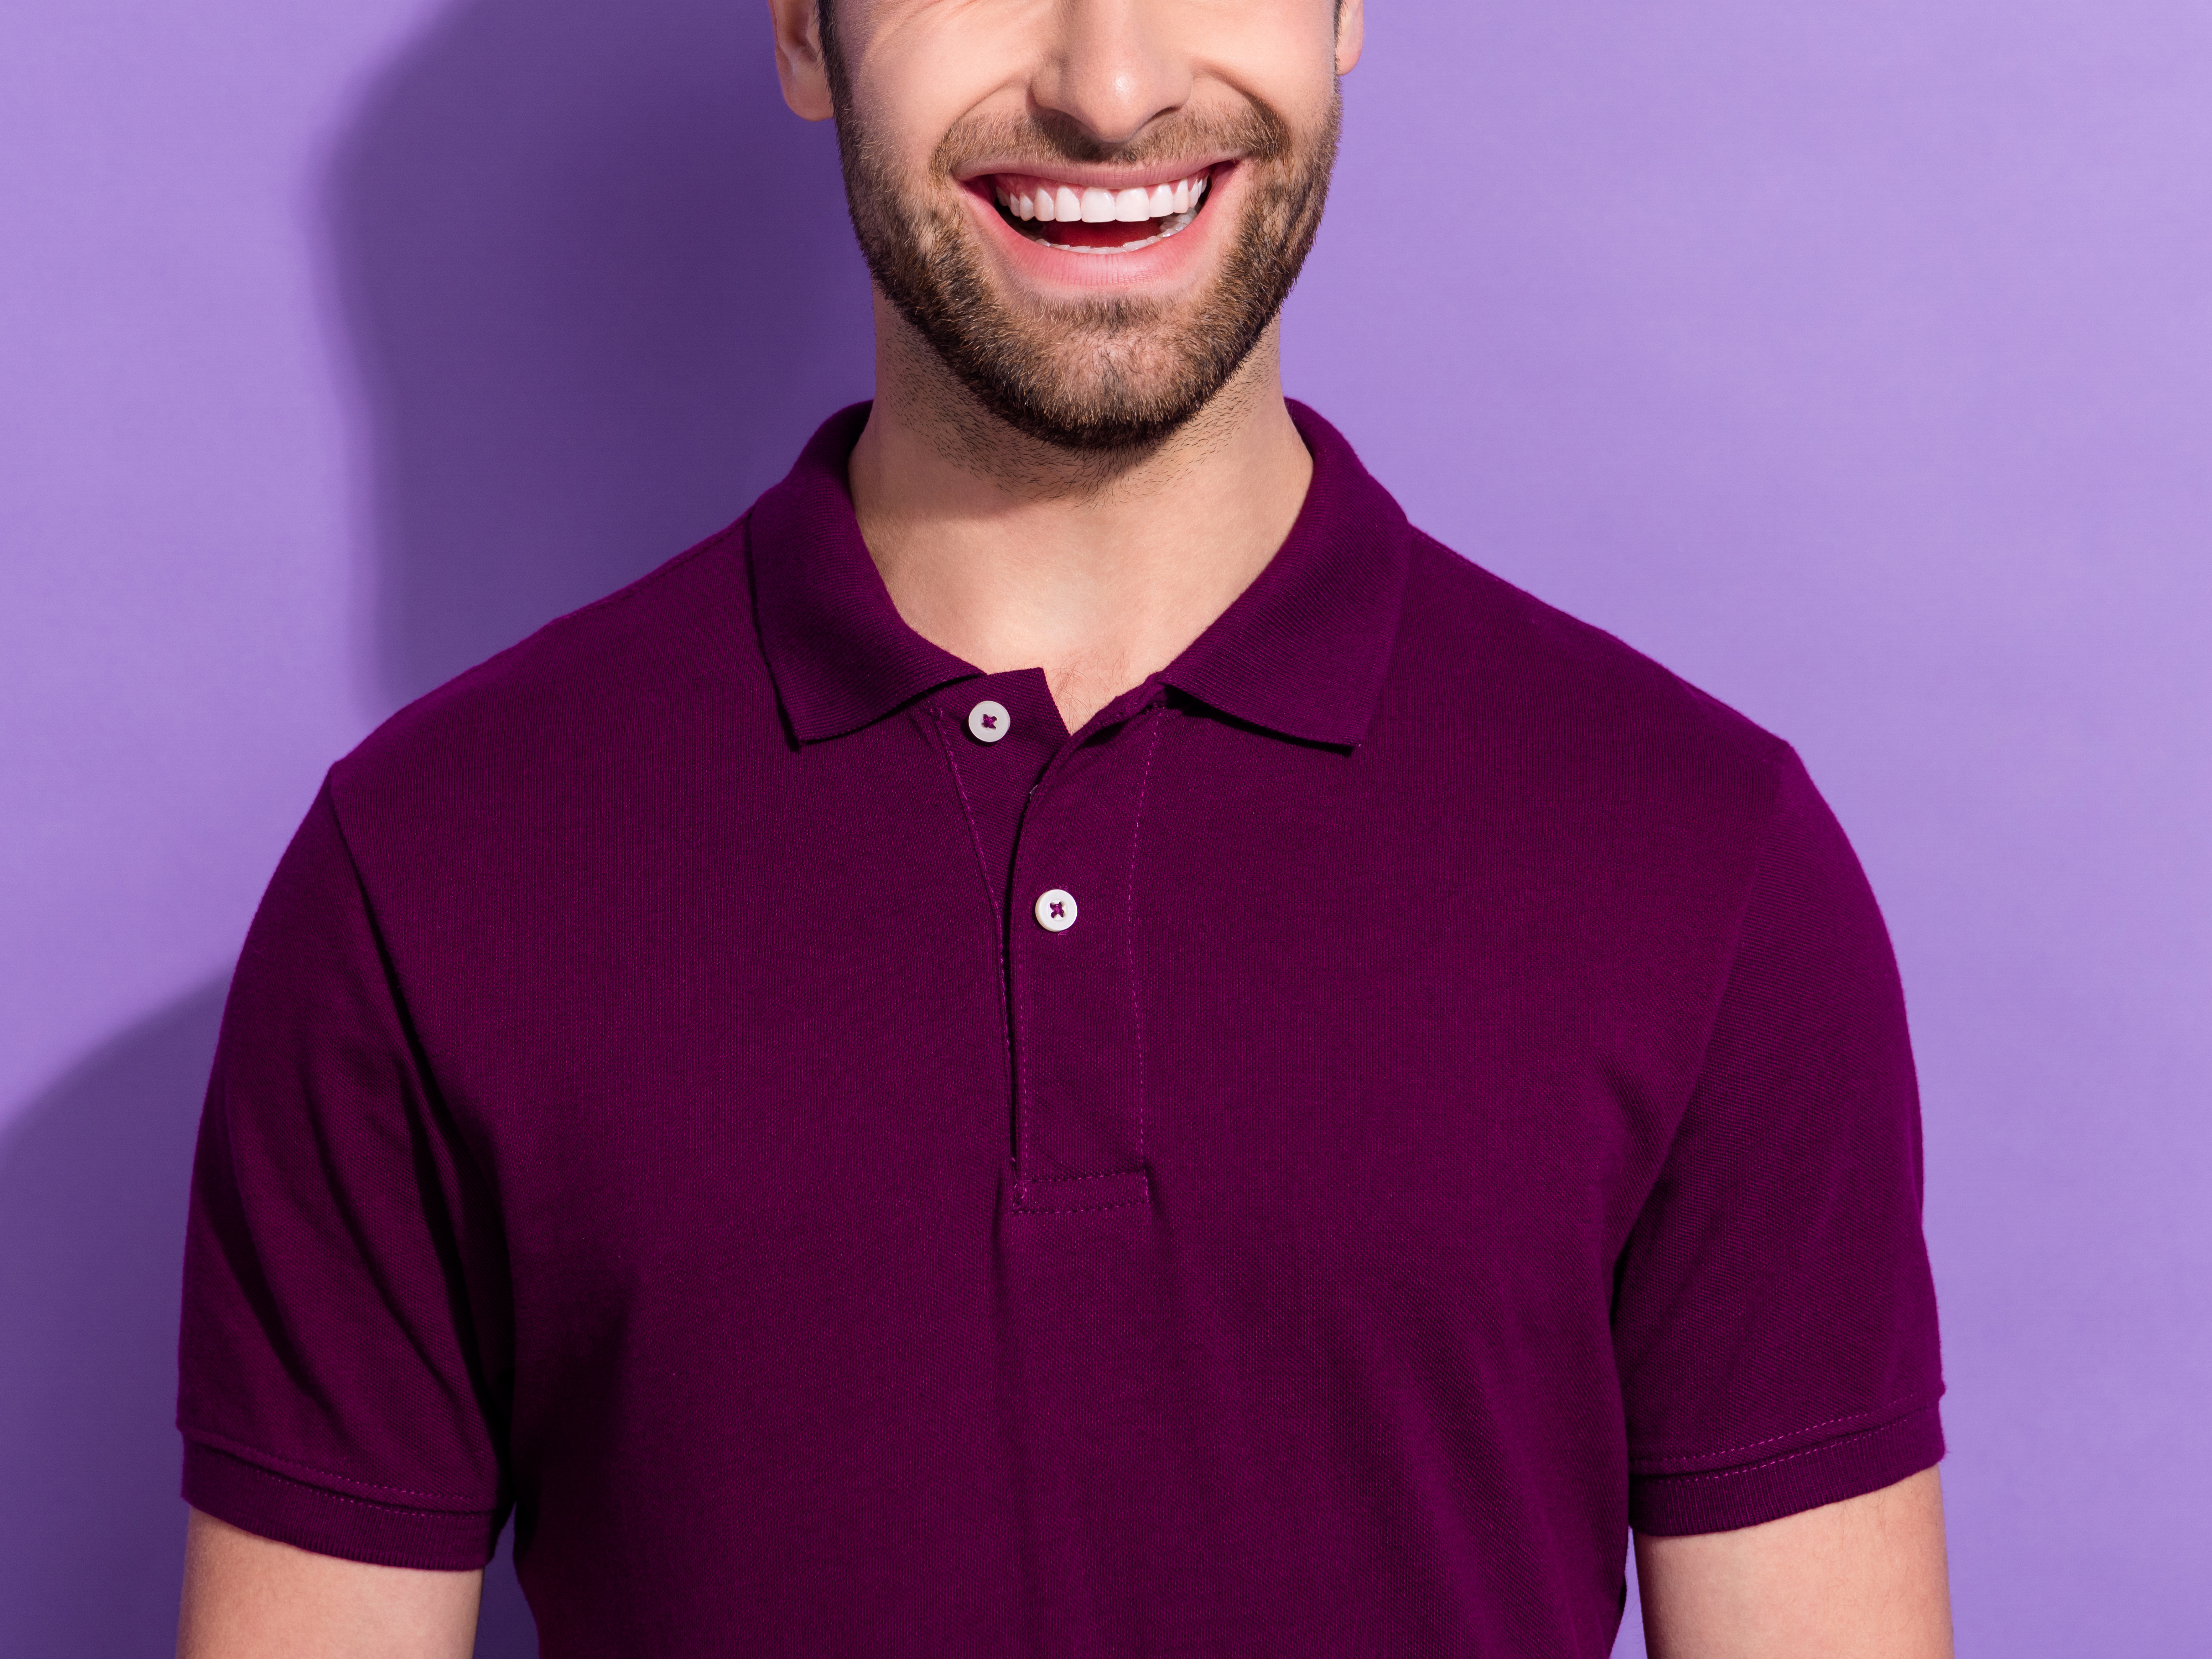 Mann som smiler med skjegg i lilla t-skjorte med krage mot lilla bakgrunn.